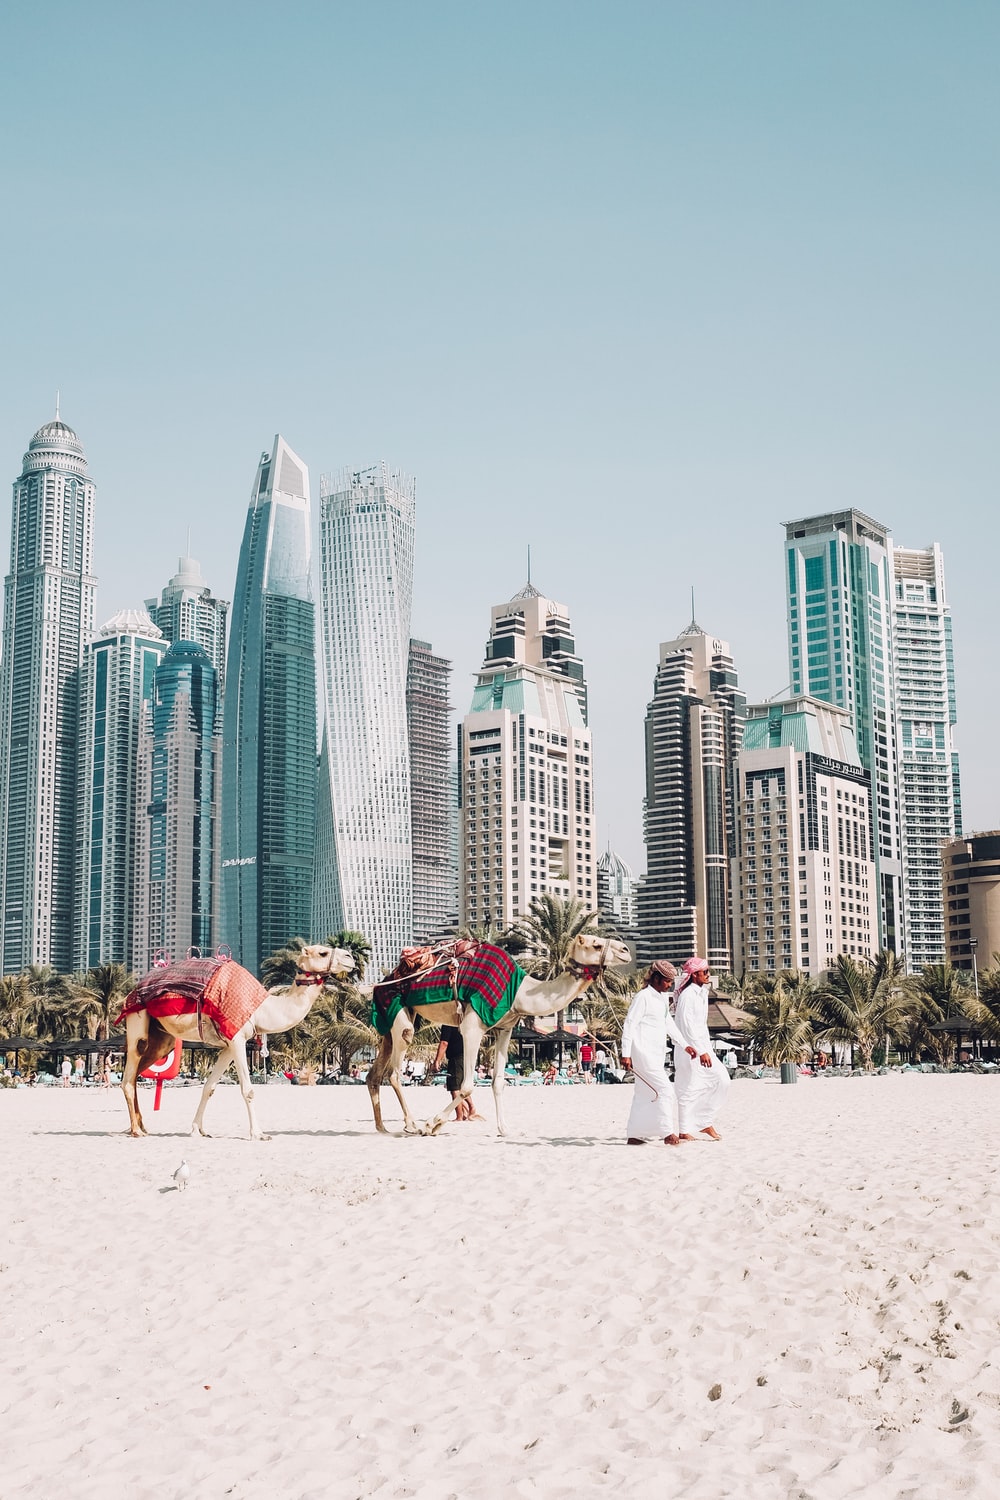 Dubai Beach Picture. Download Free Image